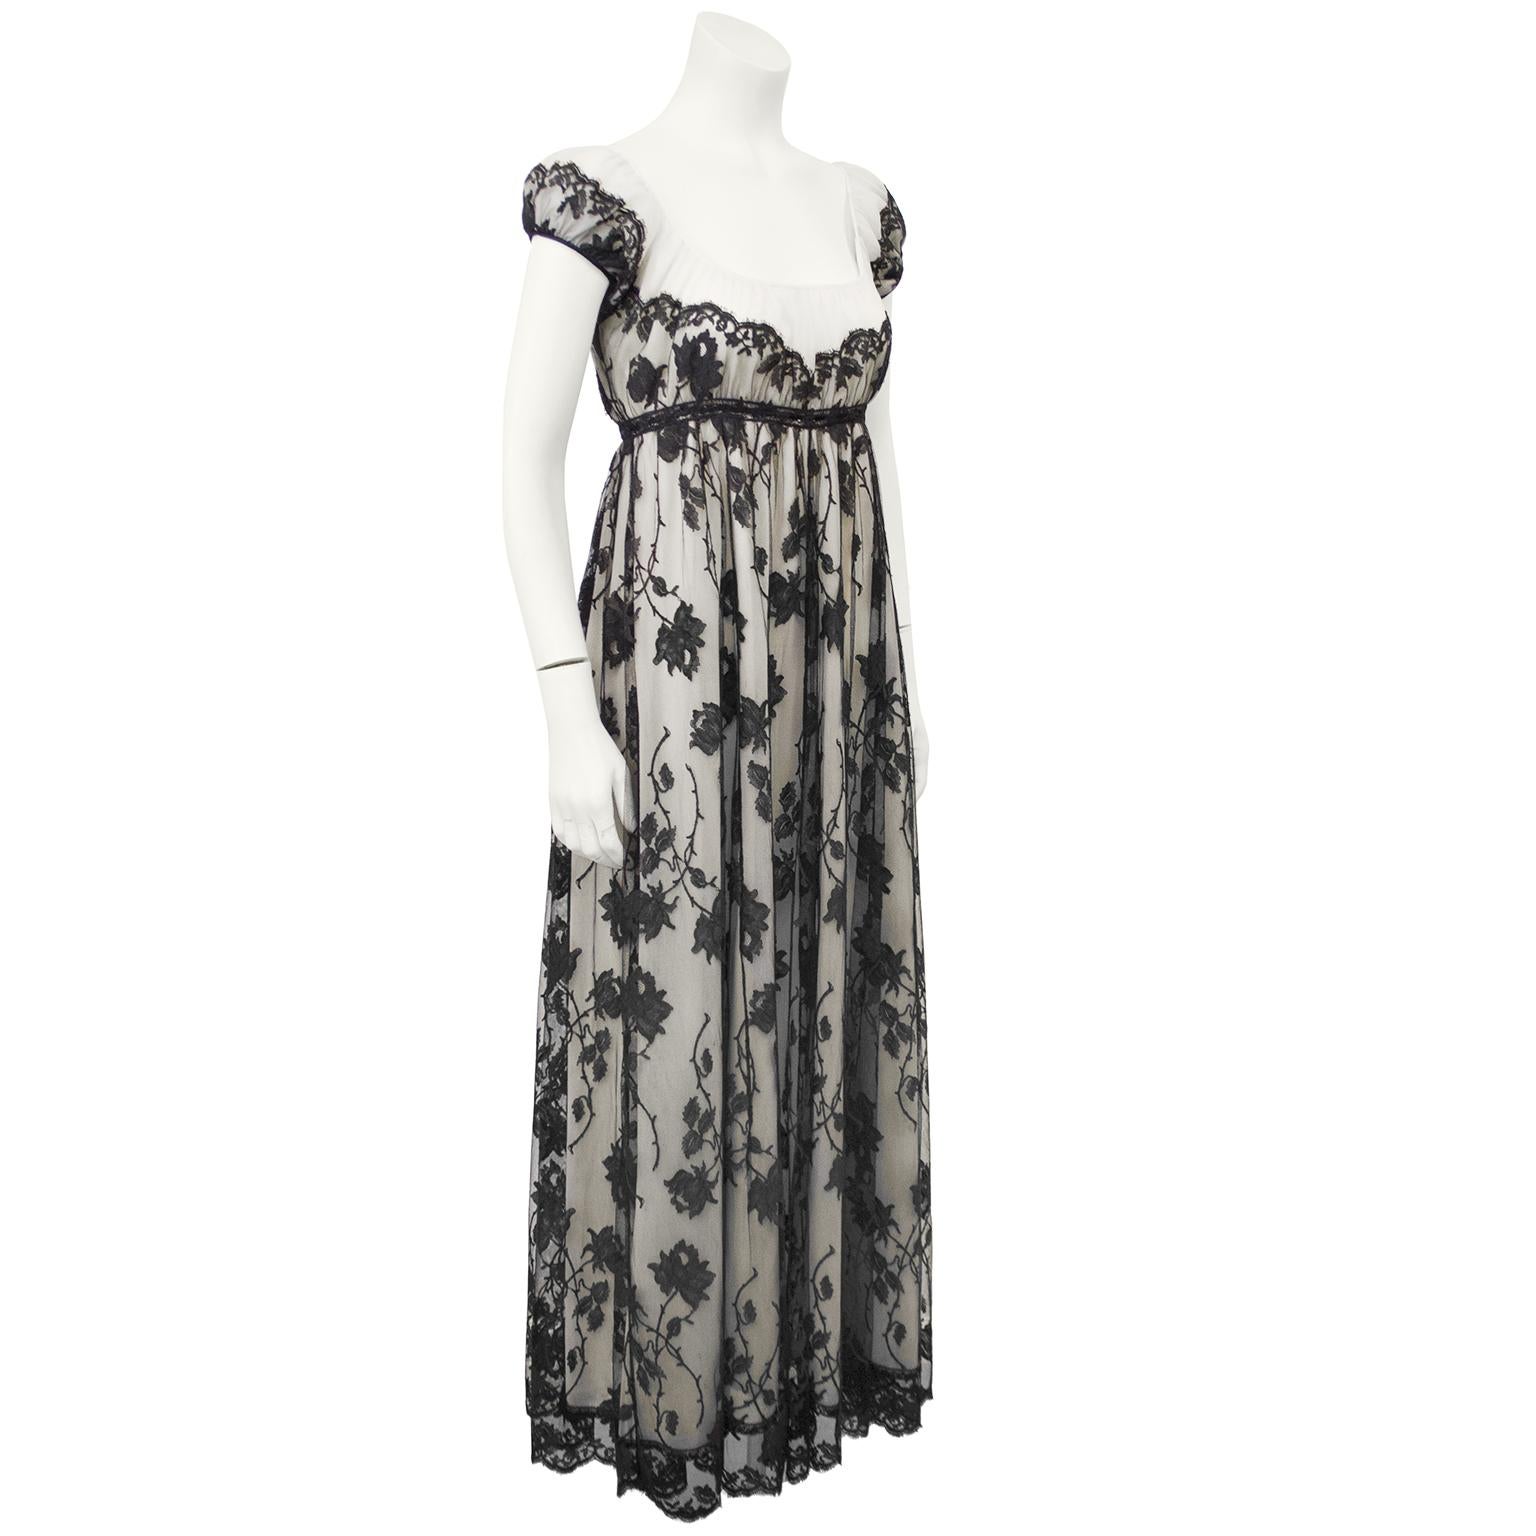 Erstaunliche schwarze Spitze über Nylon-Dessous/Kleid von der berühmten Lucie Ann aus Beverly HIlls. Dieses Stück könnte ursprünglich als Unterwäsche getragen worden sein, wurde aber von der ursprünglichen Besitzerin verändert und an der Rückennaht